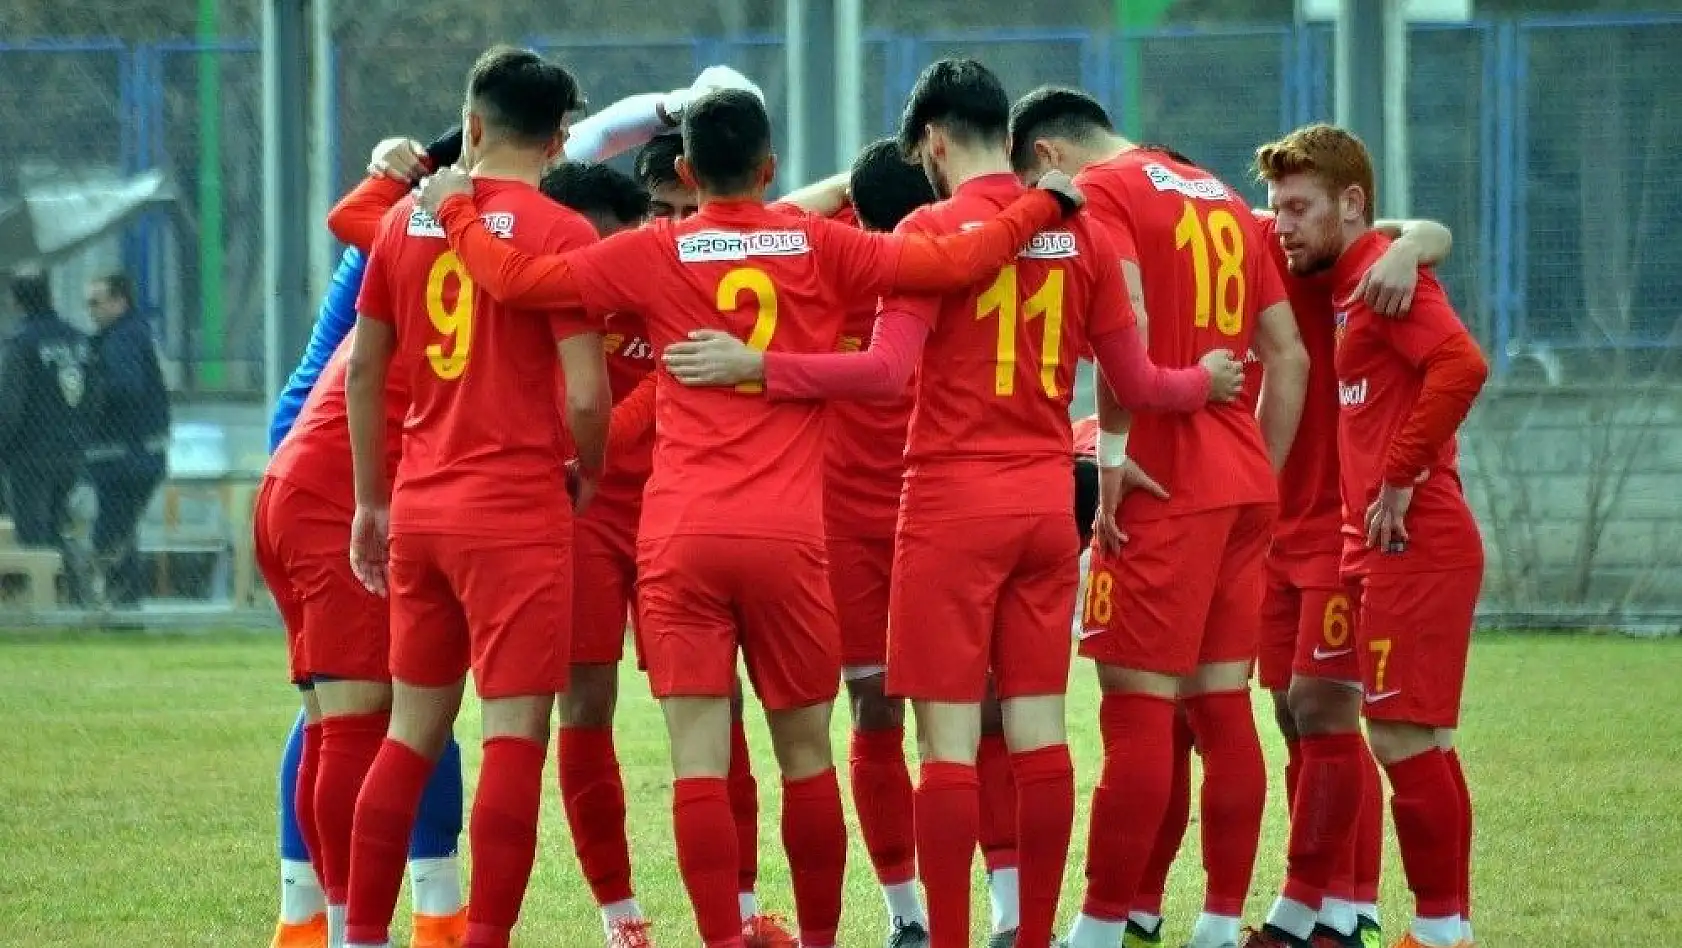 Kayserispor U21 sezonu galibiyetle kapatmak istiyor